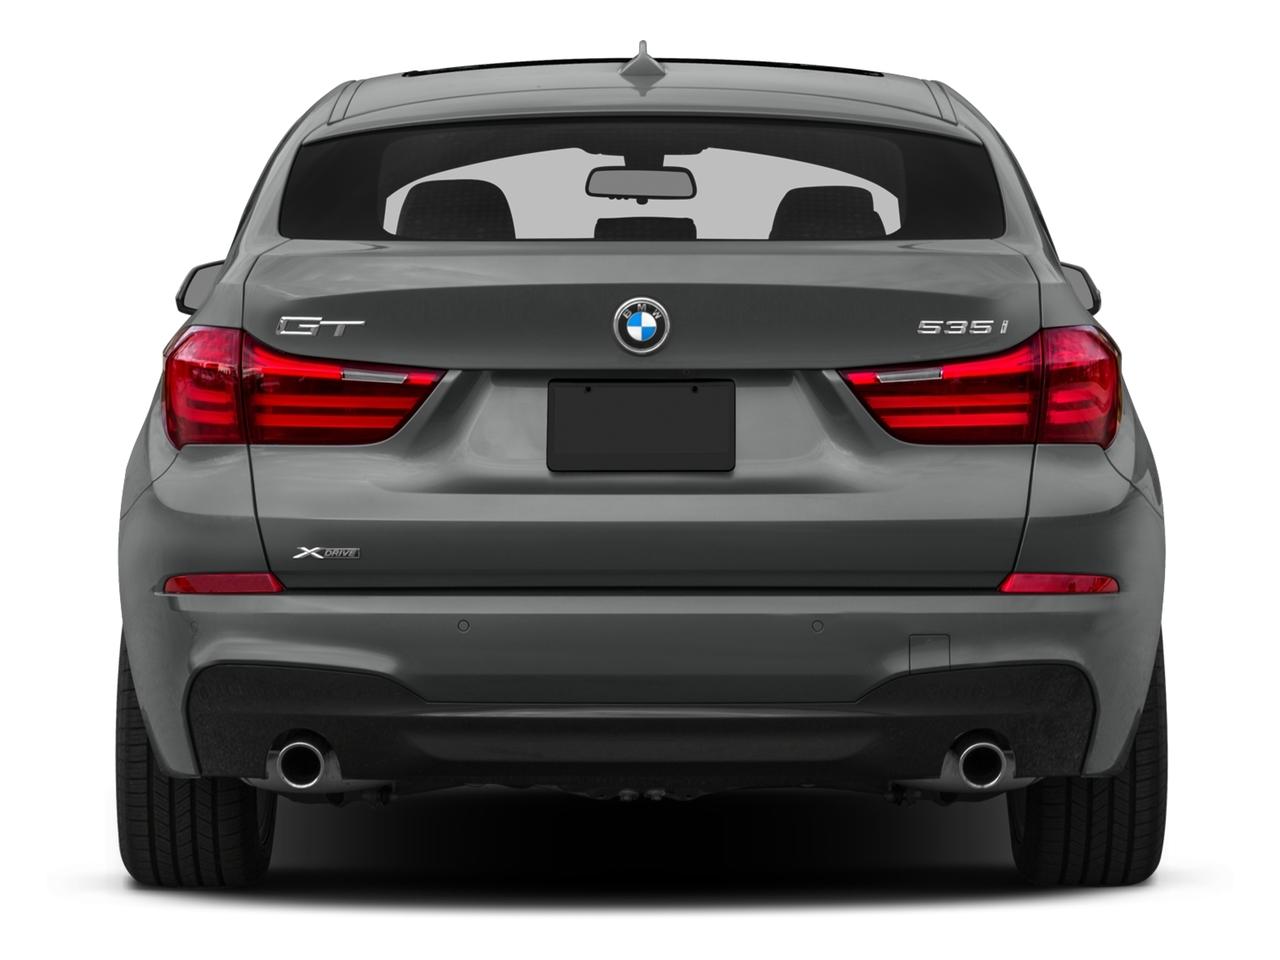 2015 BMW 535i Gran Turismo Vehicle Photo in Houston, TX 77007